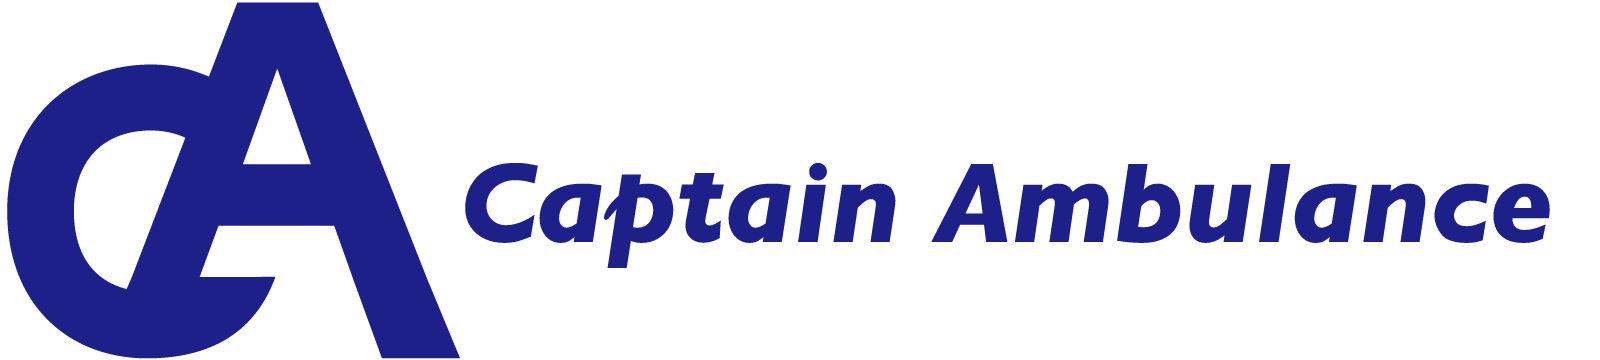 株式会社 Captain Ambulance